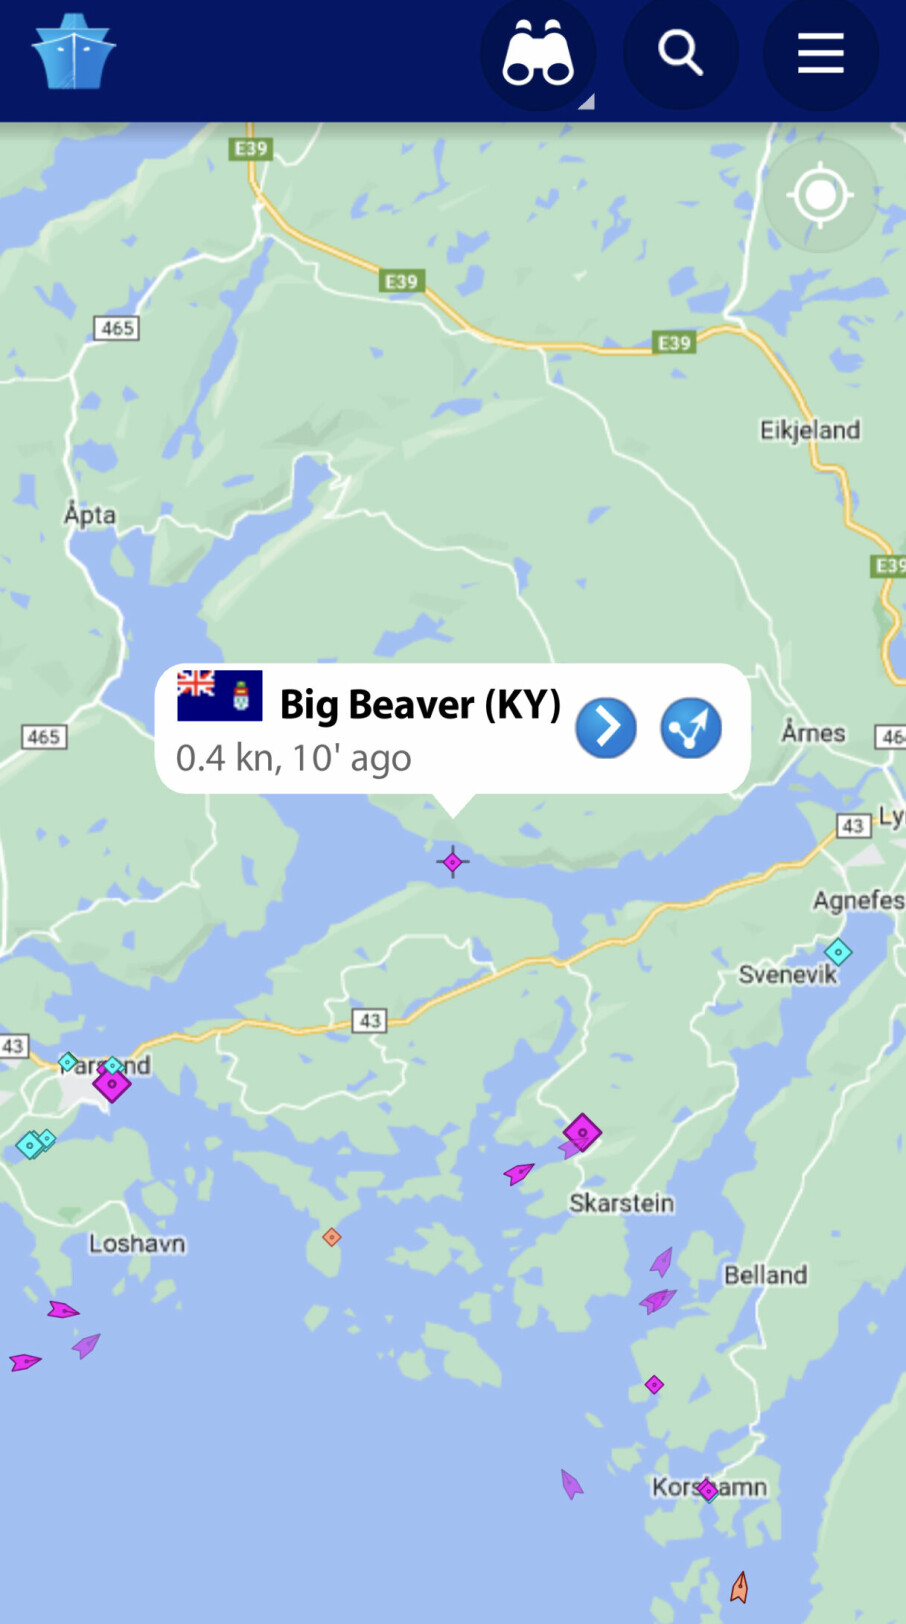 MINUTTER: På et øyeblikk hadde «Big Beaver» flyttet seg fra marinaen i Cannes til denne posisjonen ved Lyngdal, hvor den faktisk befant seg.